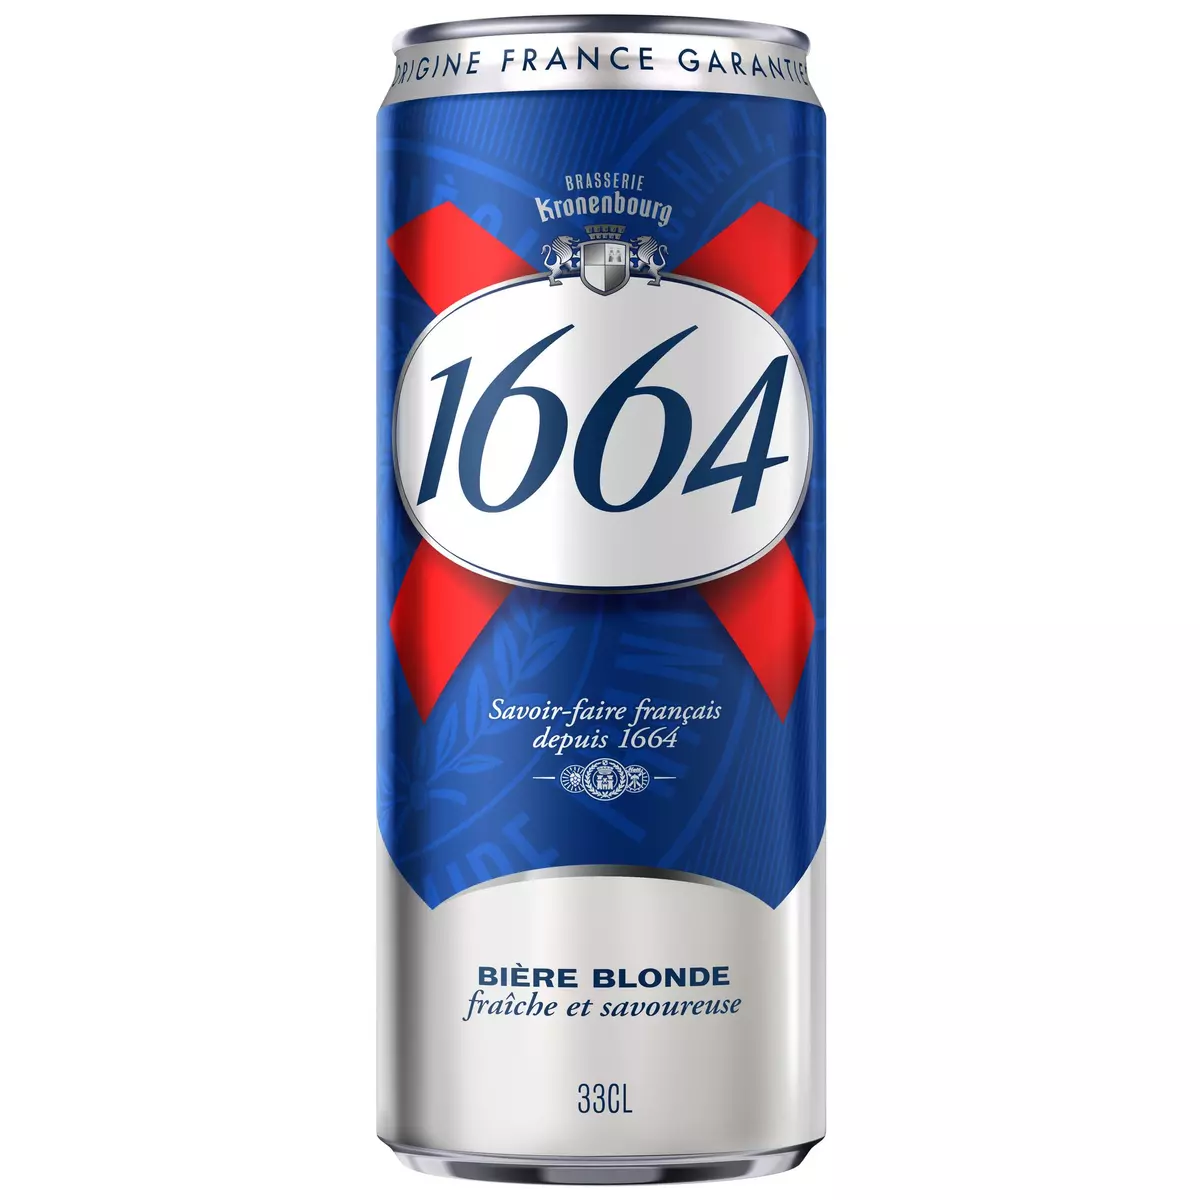 1664 Bière Blonde 5.5% 33cl